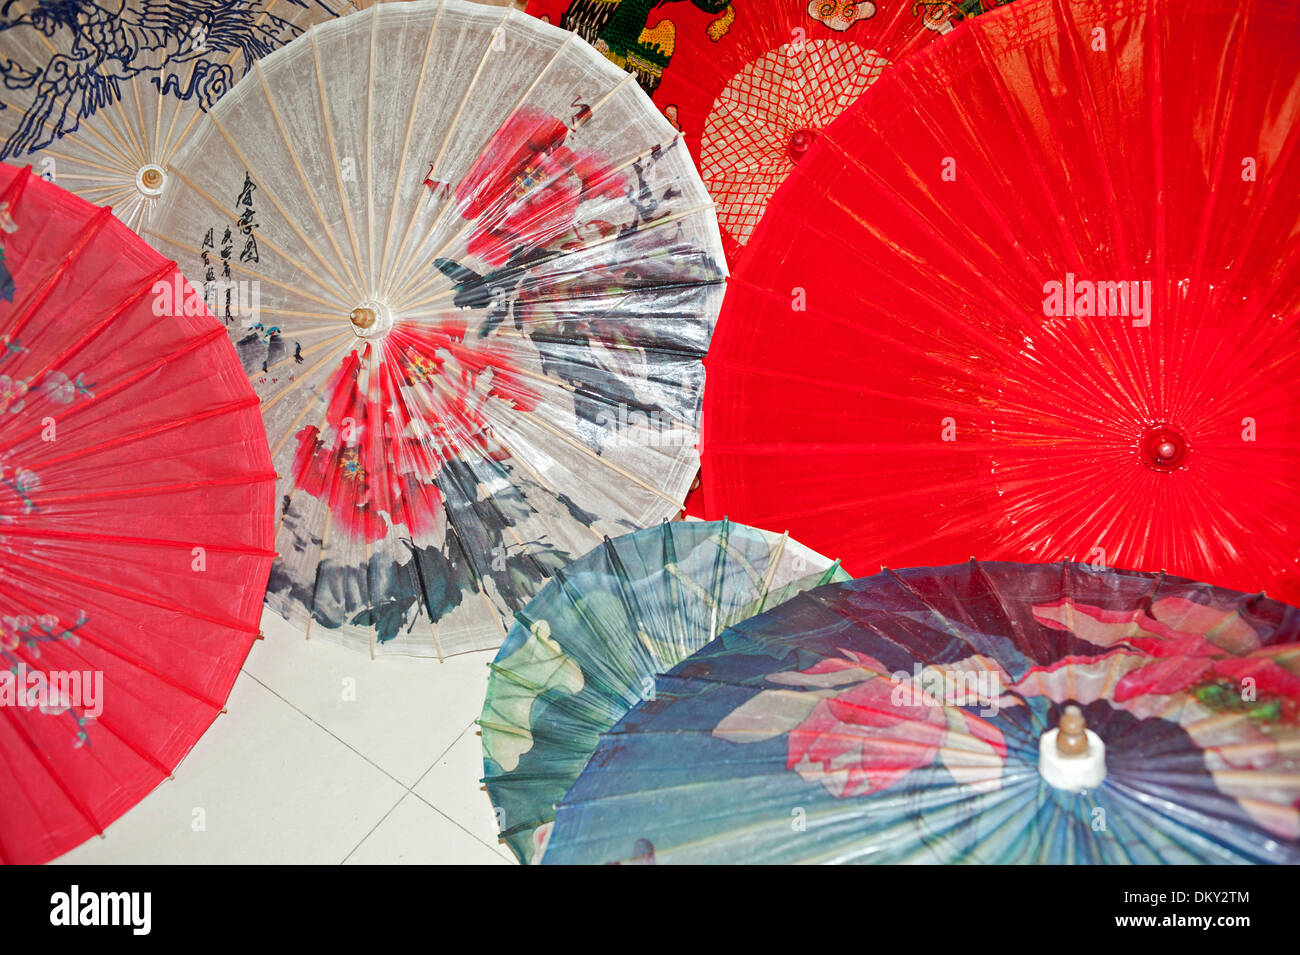 Ombrelli cinesi immagini e fotografie stock ad alta risoluzione - Alamy